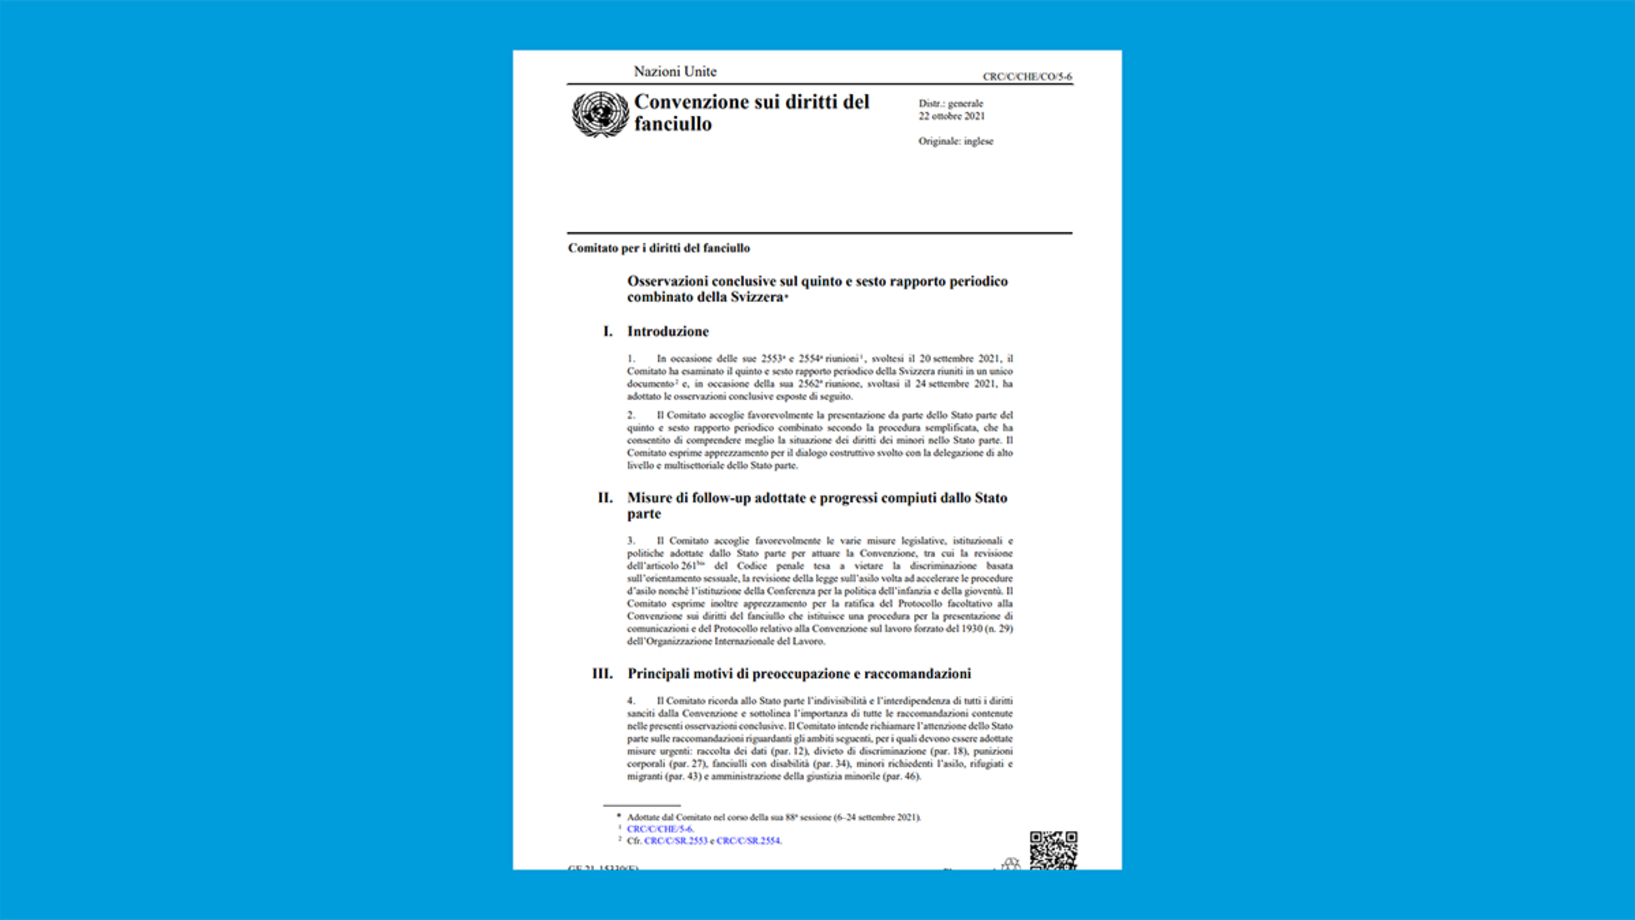 Kinderrechtsausschuss UN_Oktober 2021_IT.PNG 